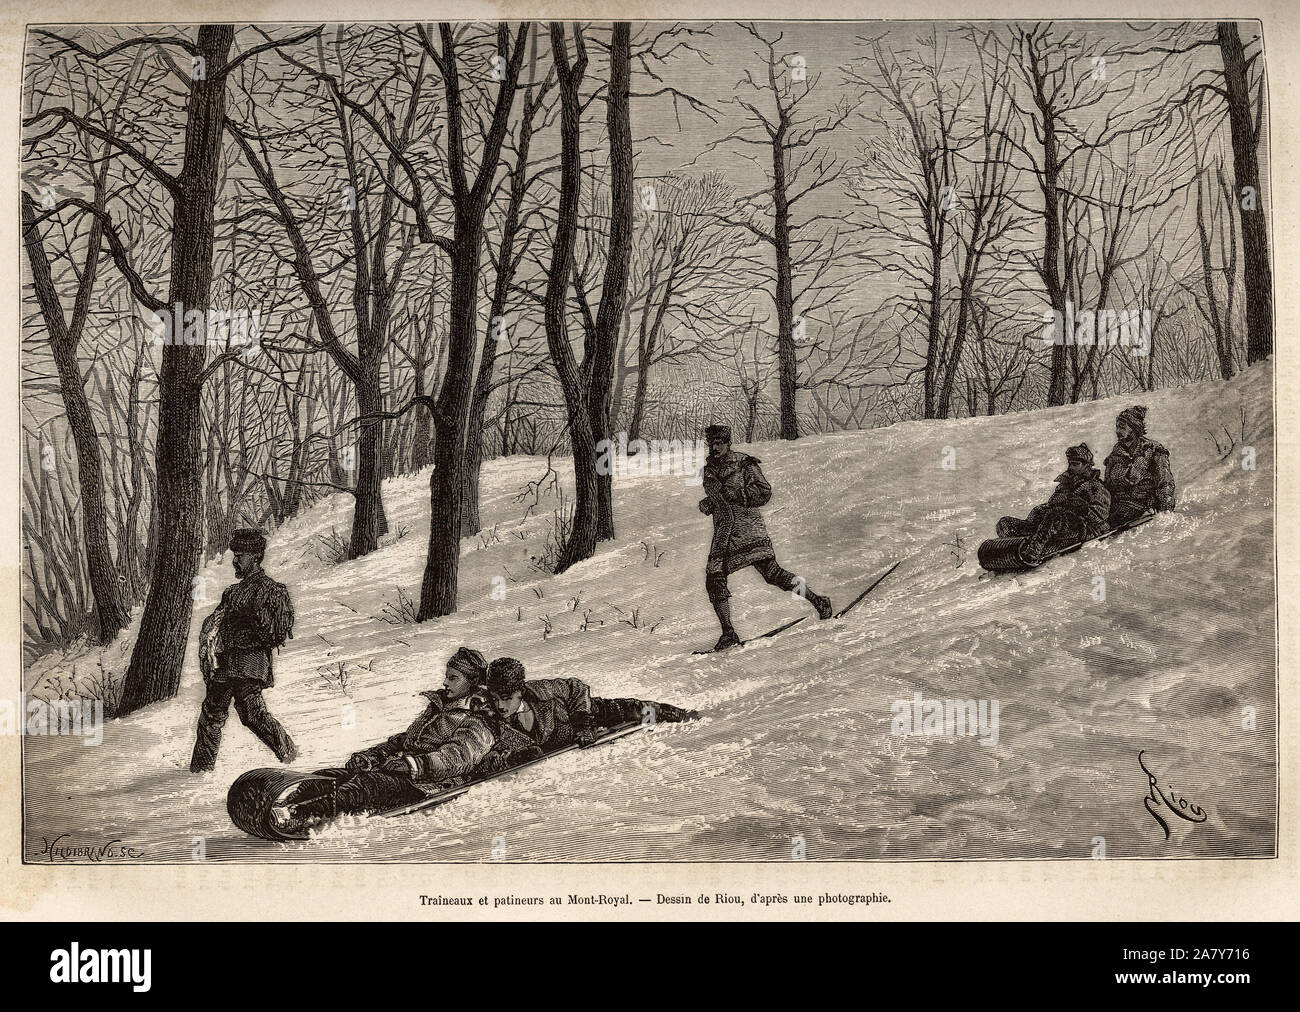 Luges et patineurs au plateau du Mont-Royal, pres de Montreal, rotocalco d'apres onu dessin de Riou, illustrant l'escursione au Canada et a la riviere Rou Foto Stock